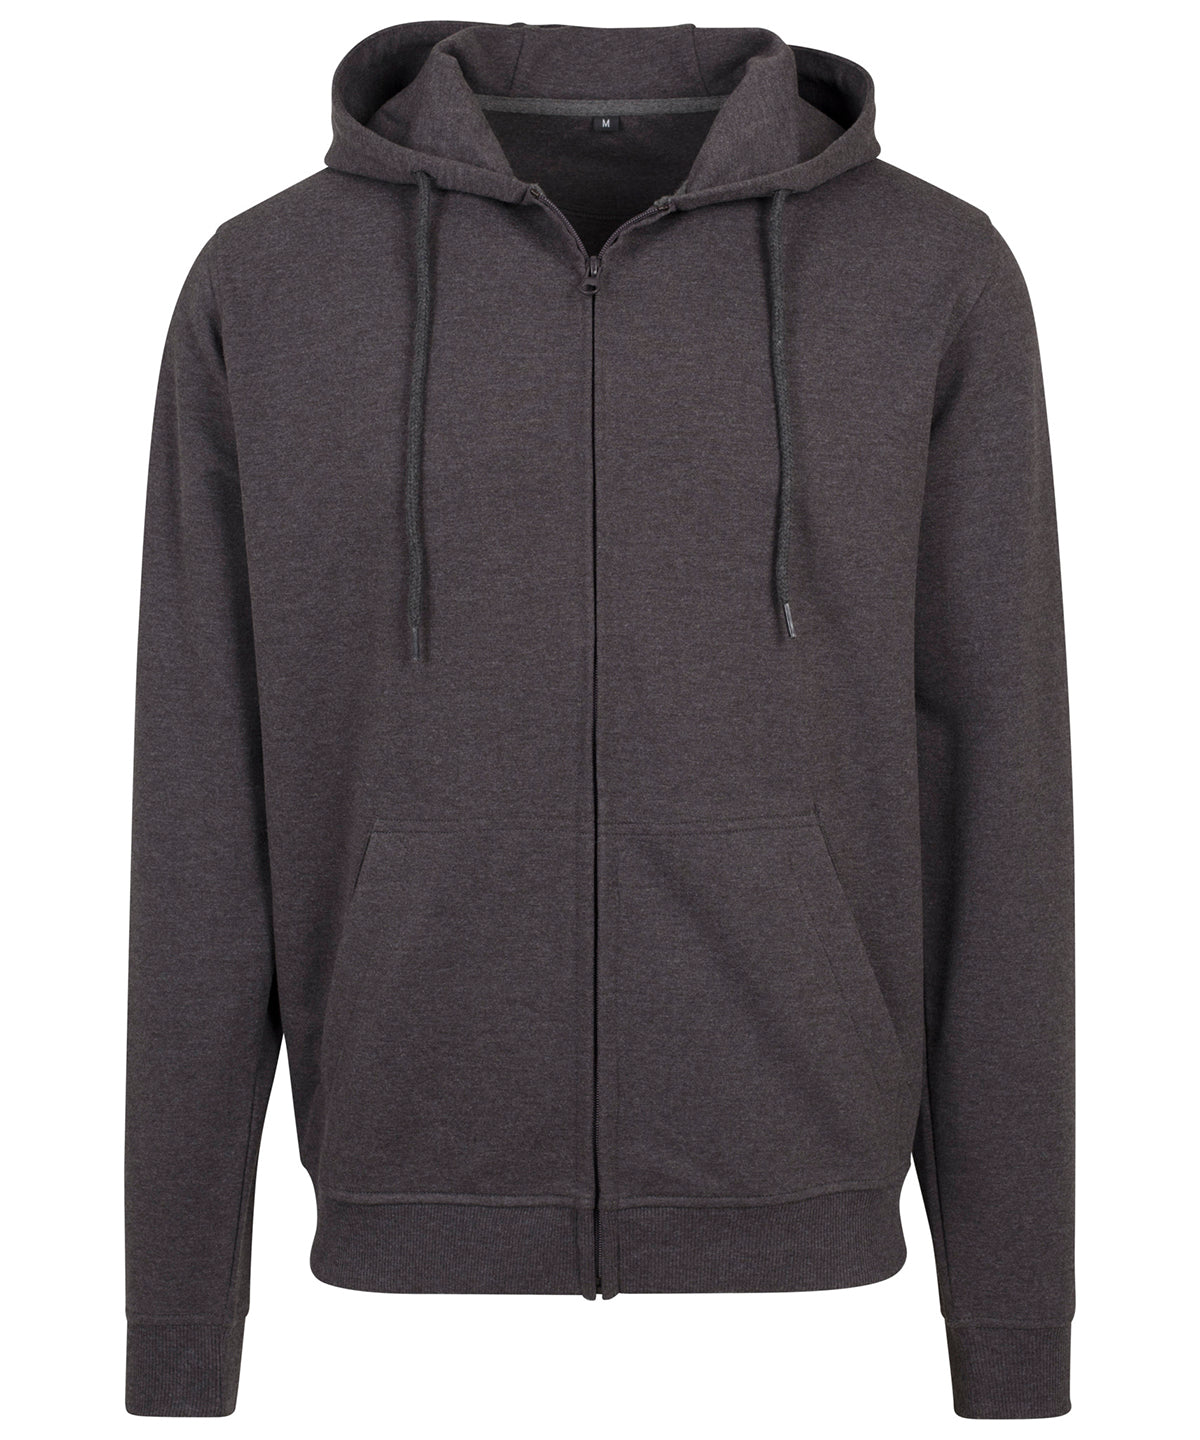 Personalised Hoodies - Dark Grey Build Your Brand Terry zip hoodie